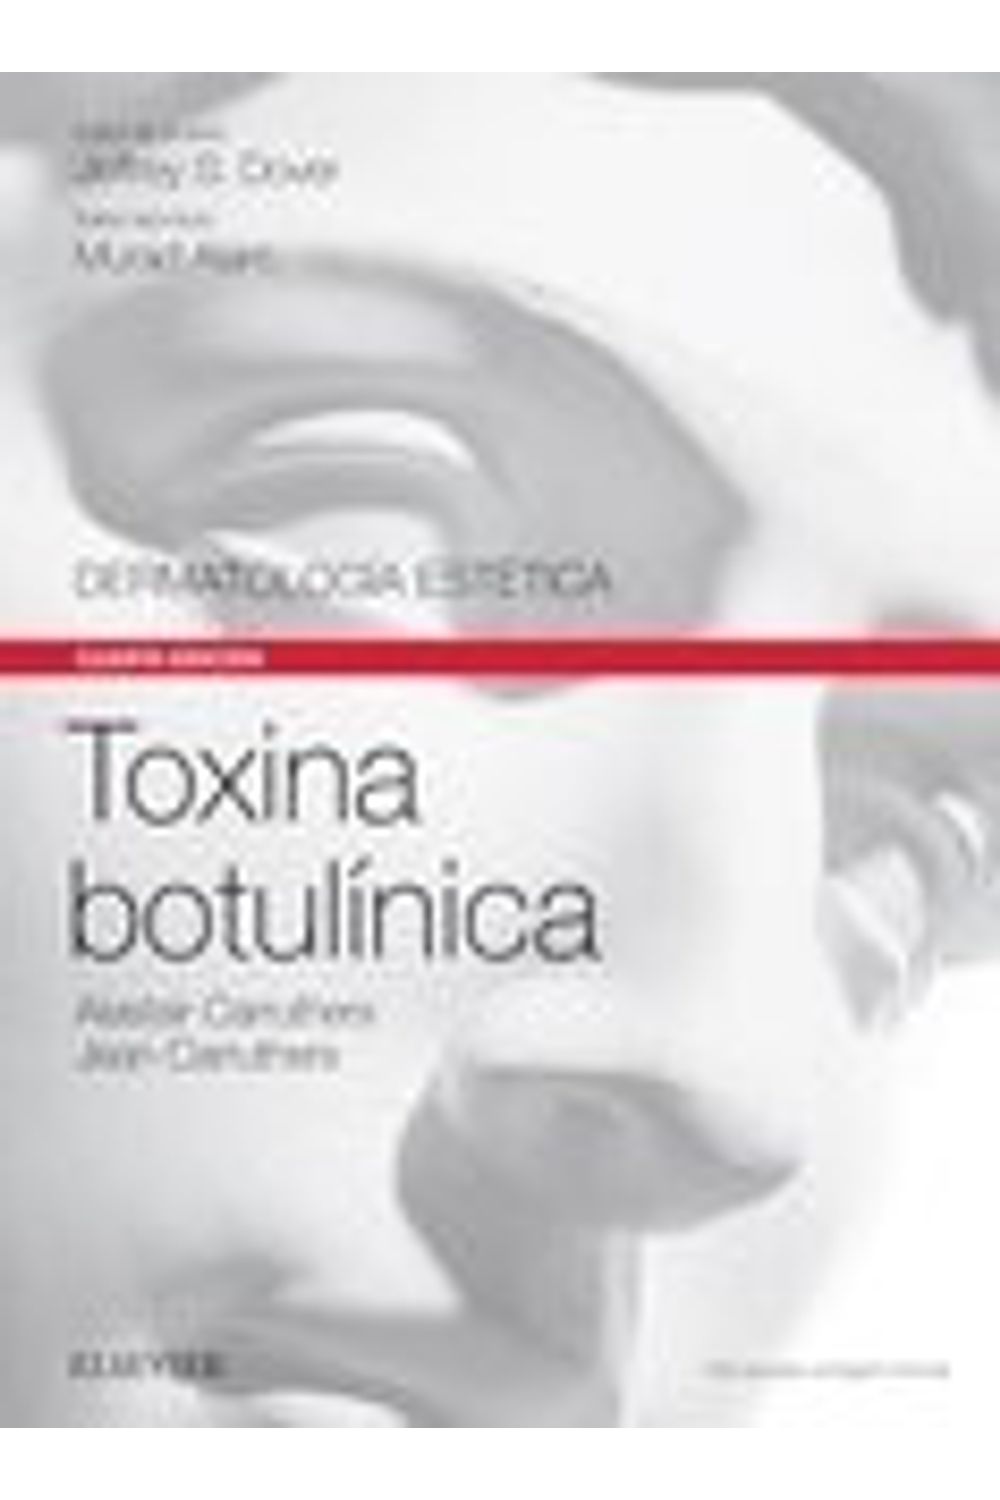 Toxina Botulinica Expertconsult 4Ed